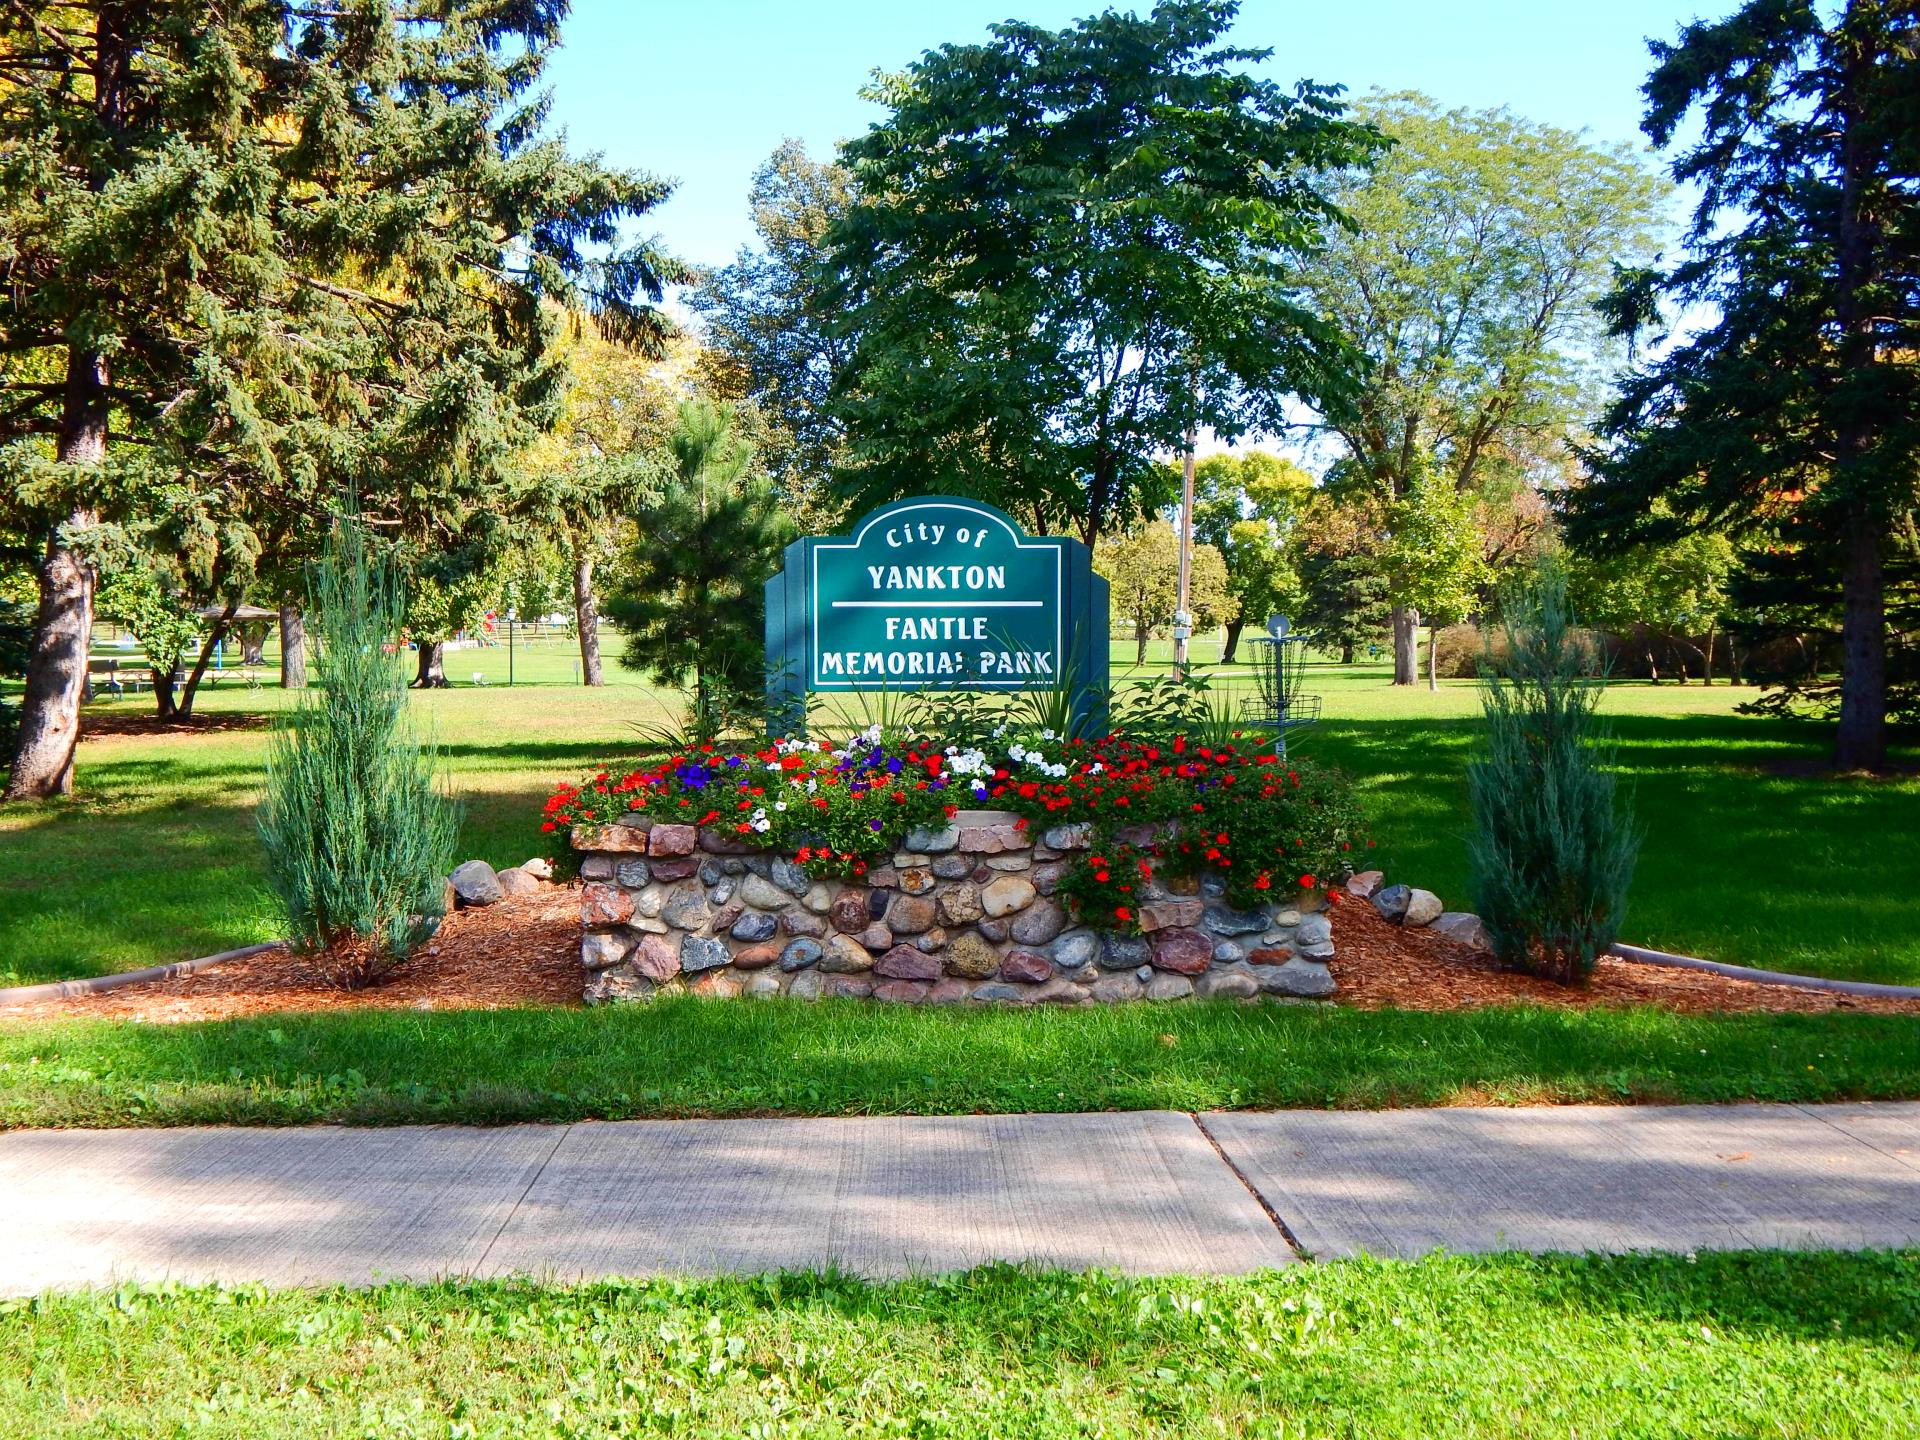 Fantle Memorial Park